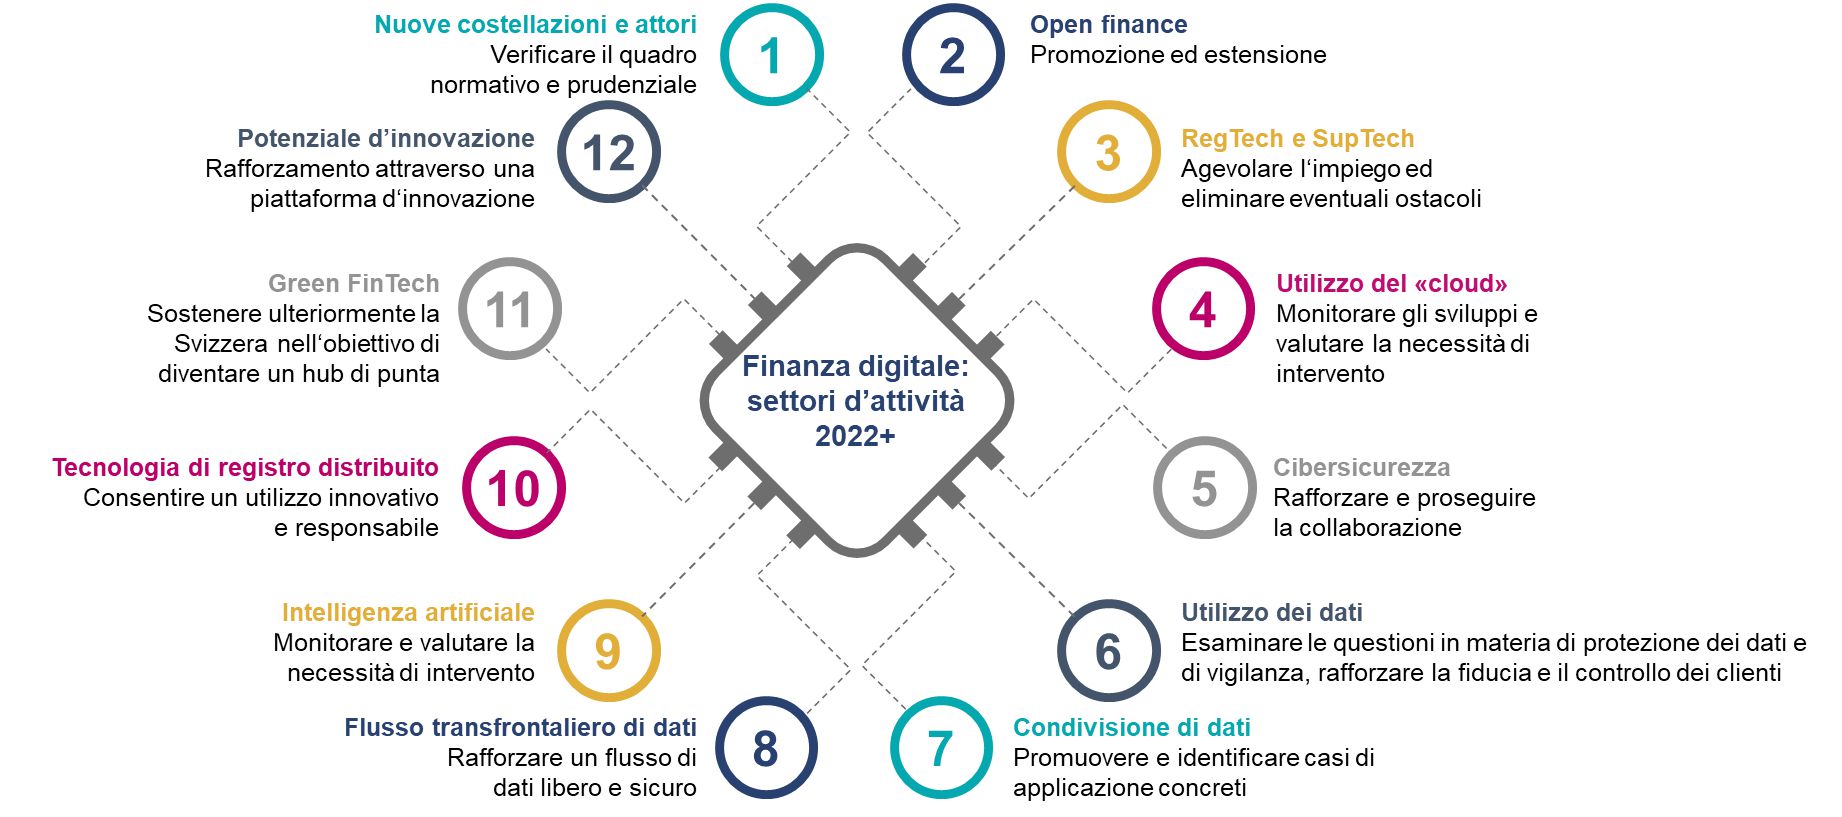 Nel rapporto "Finanza digitale settori di attività 2022+", il Consiglio Federale della Svizzera definisce 12 settori di attività e le relative misure